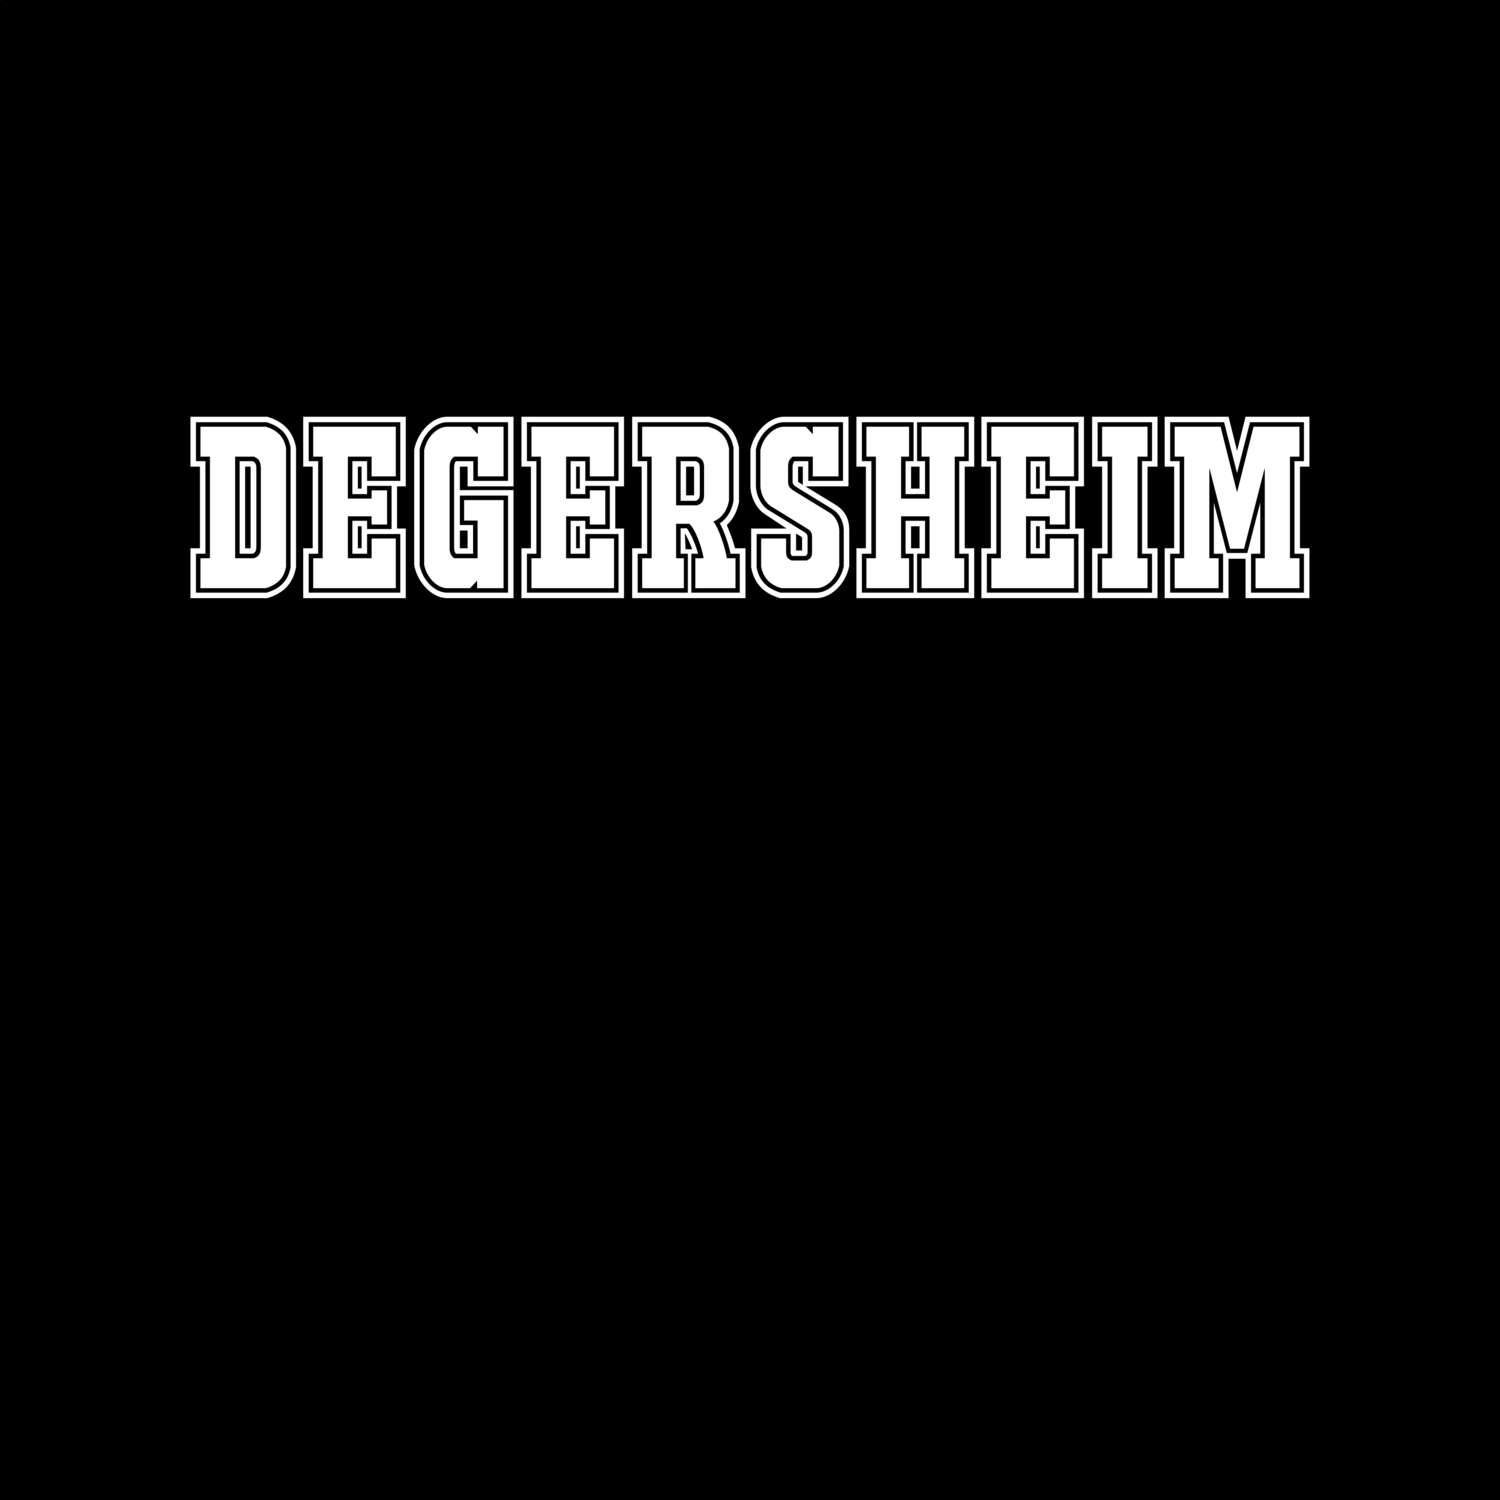 Degersheim T-Shirt »Classic«